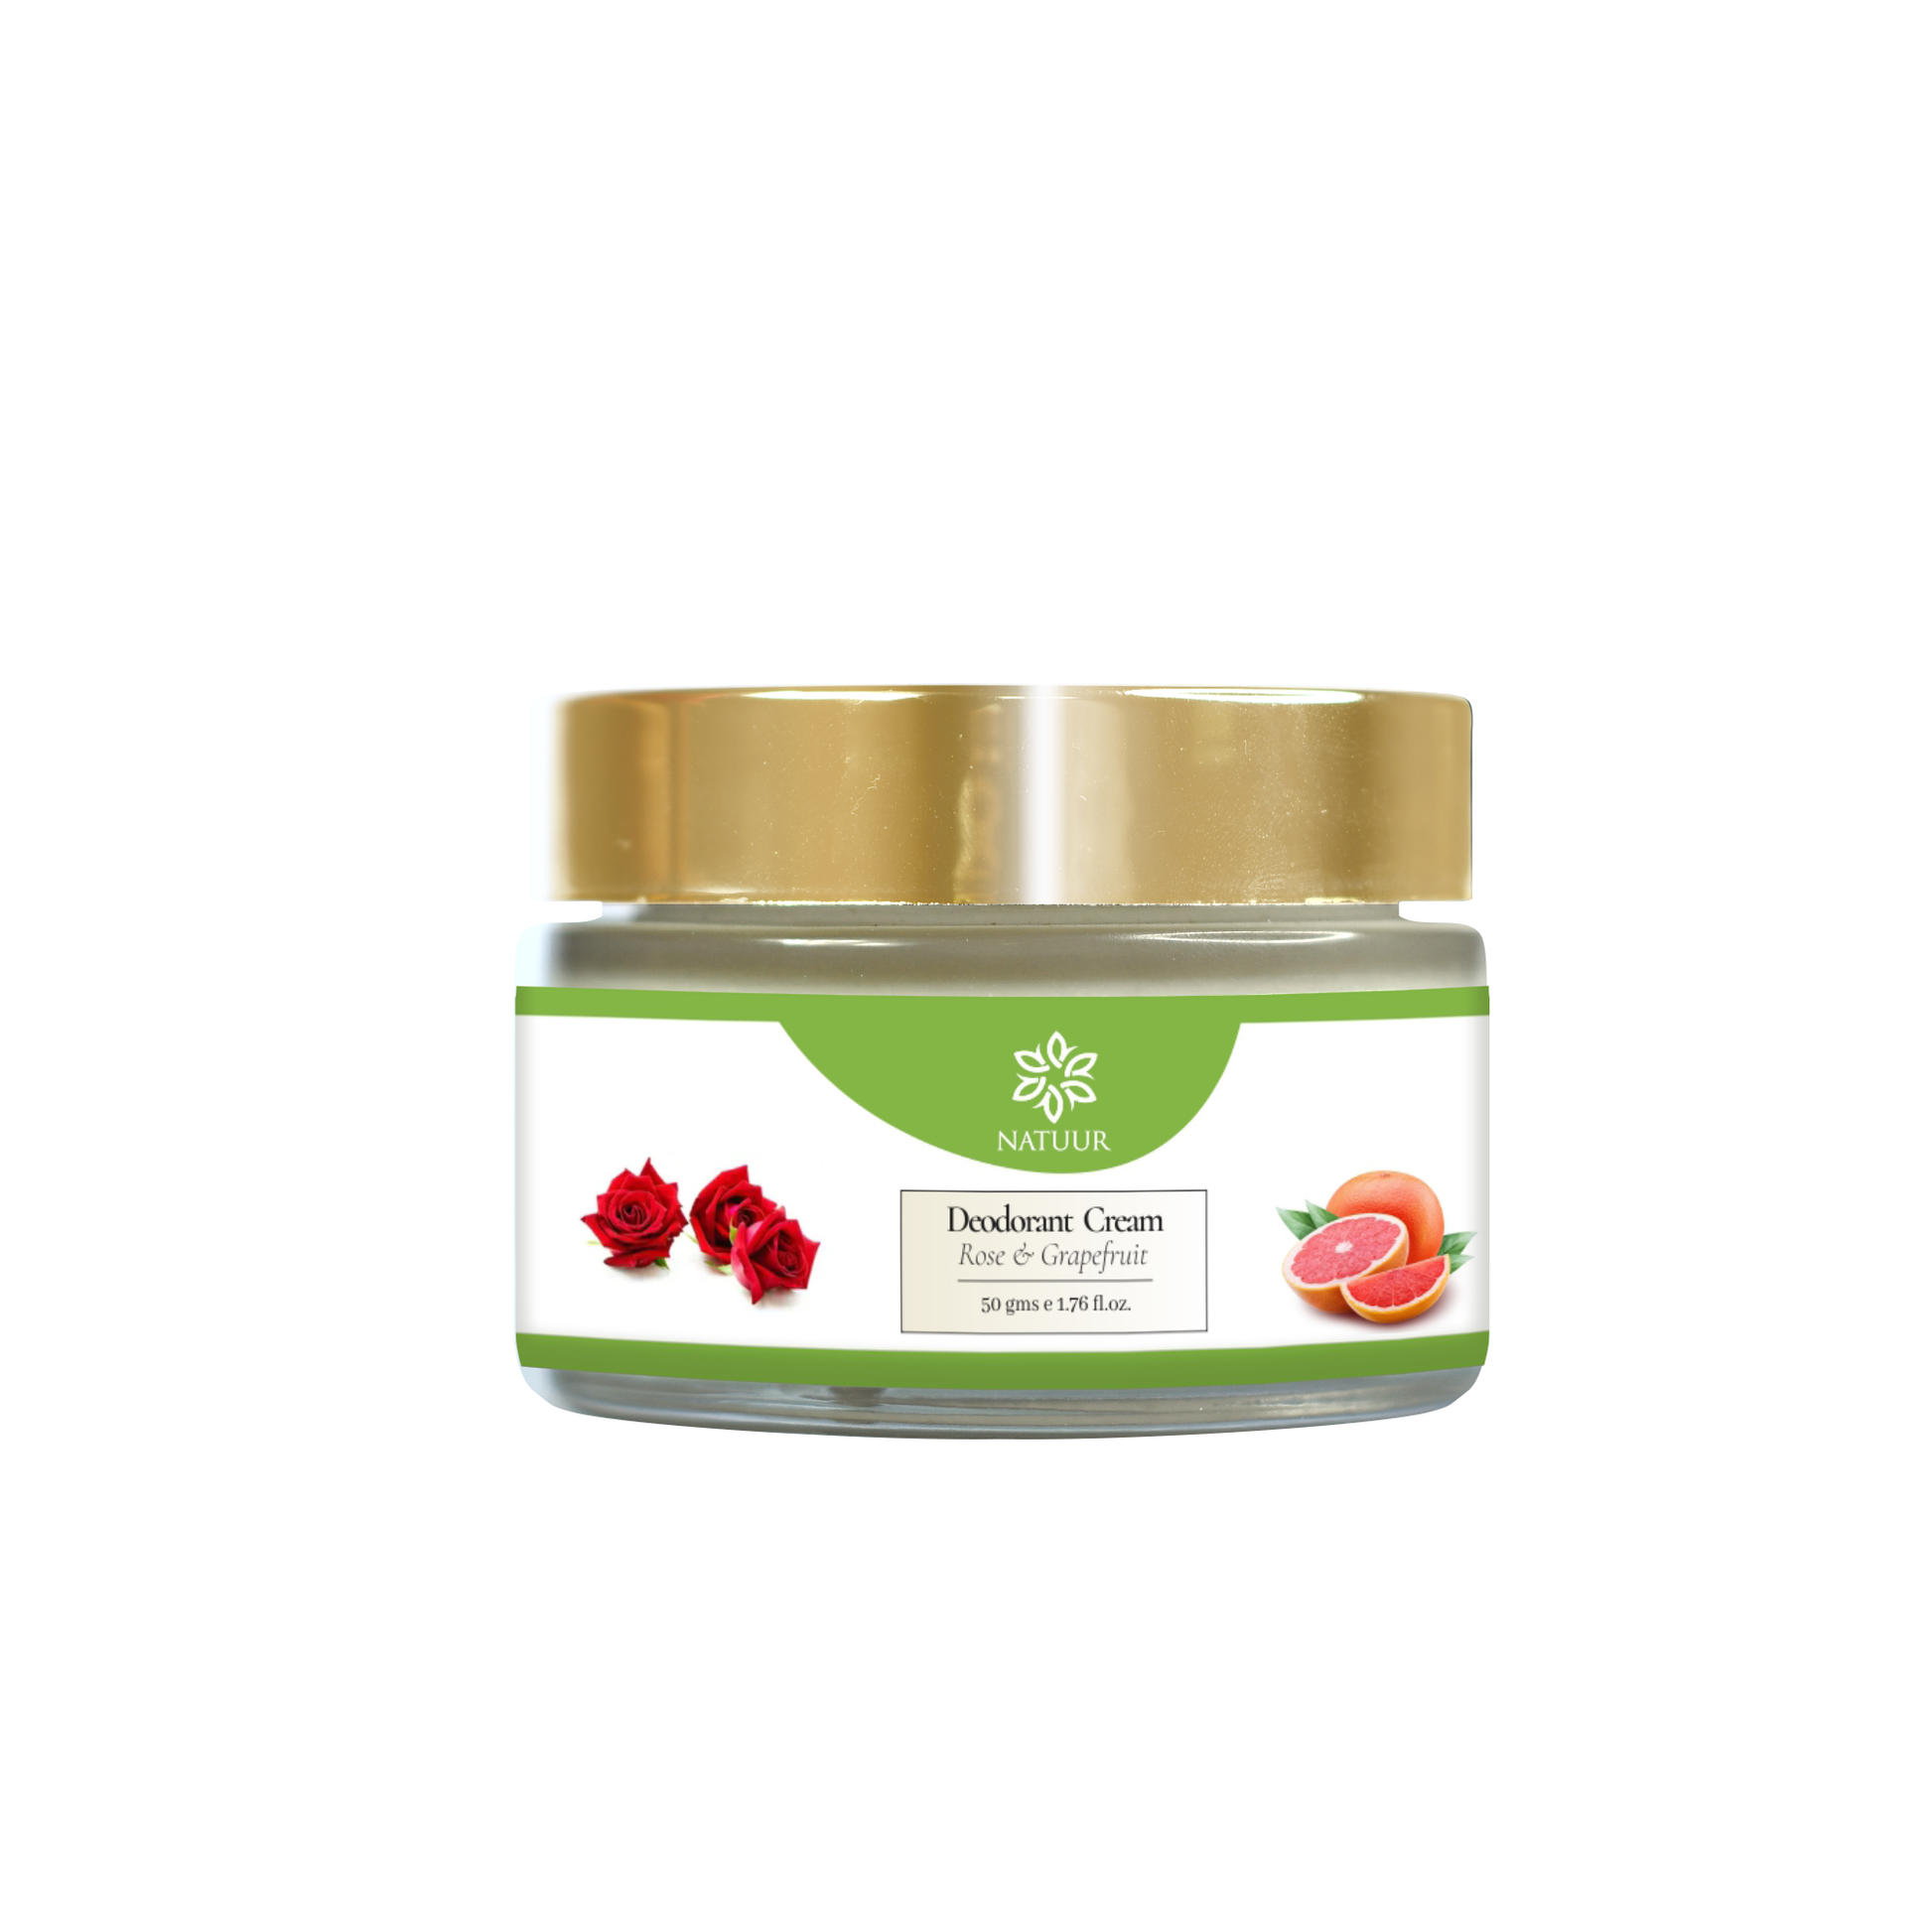 Deodorant Cream - Rose and Grapefruit - Natuur.in